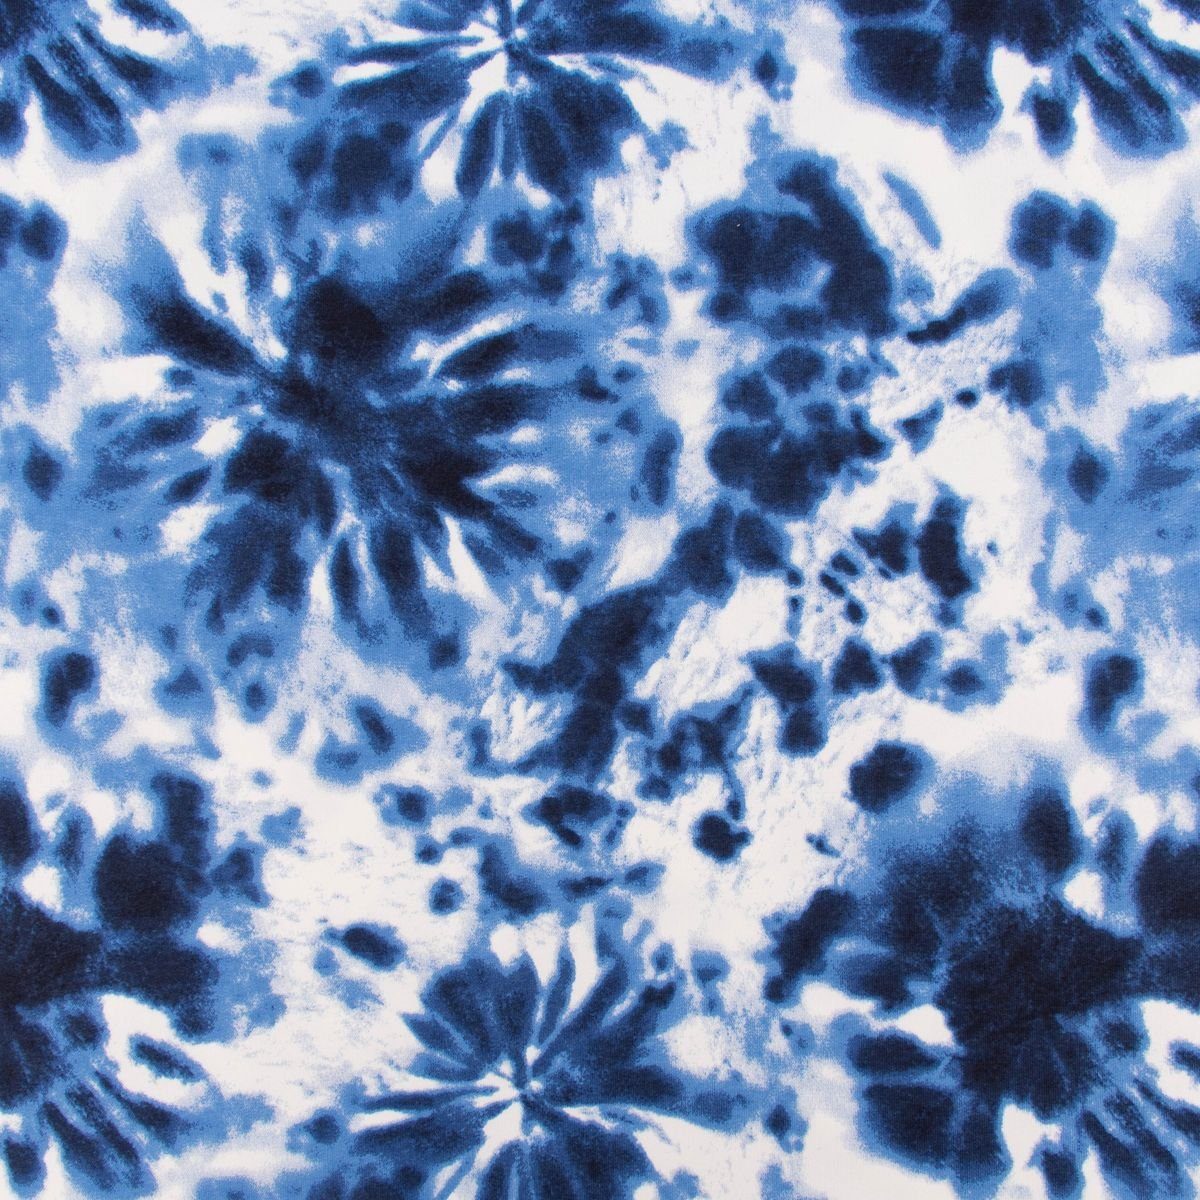 SCHÖNER LEBEN. Stoff French Terry Sommersweat Meterware Tie Dye Batik denim  blau 1,45m, allergikergeeignet